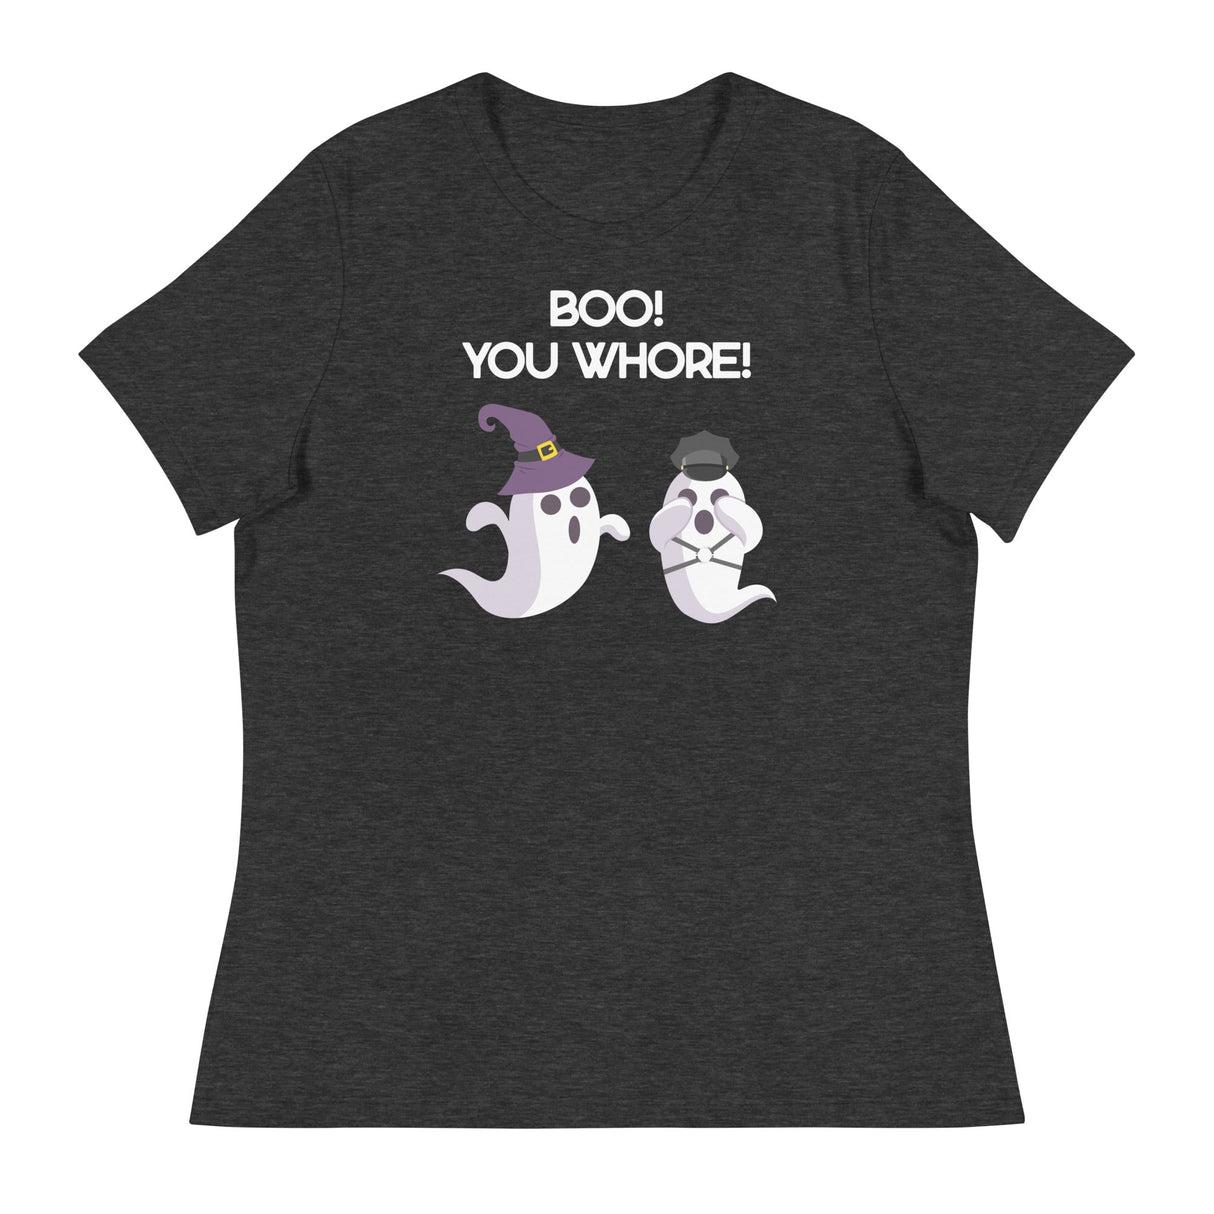 Boo You Whore! (Women's Relaxed T-Shirt)-Women's T-Shirts-Swish Embassy